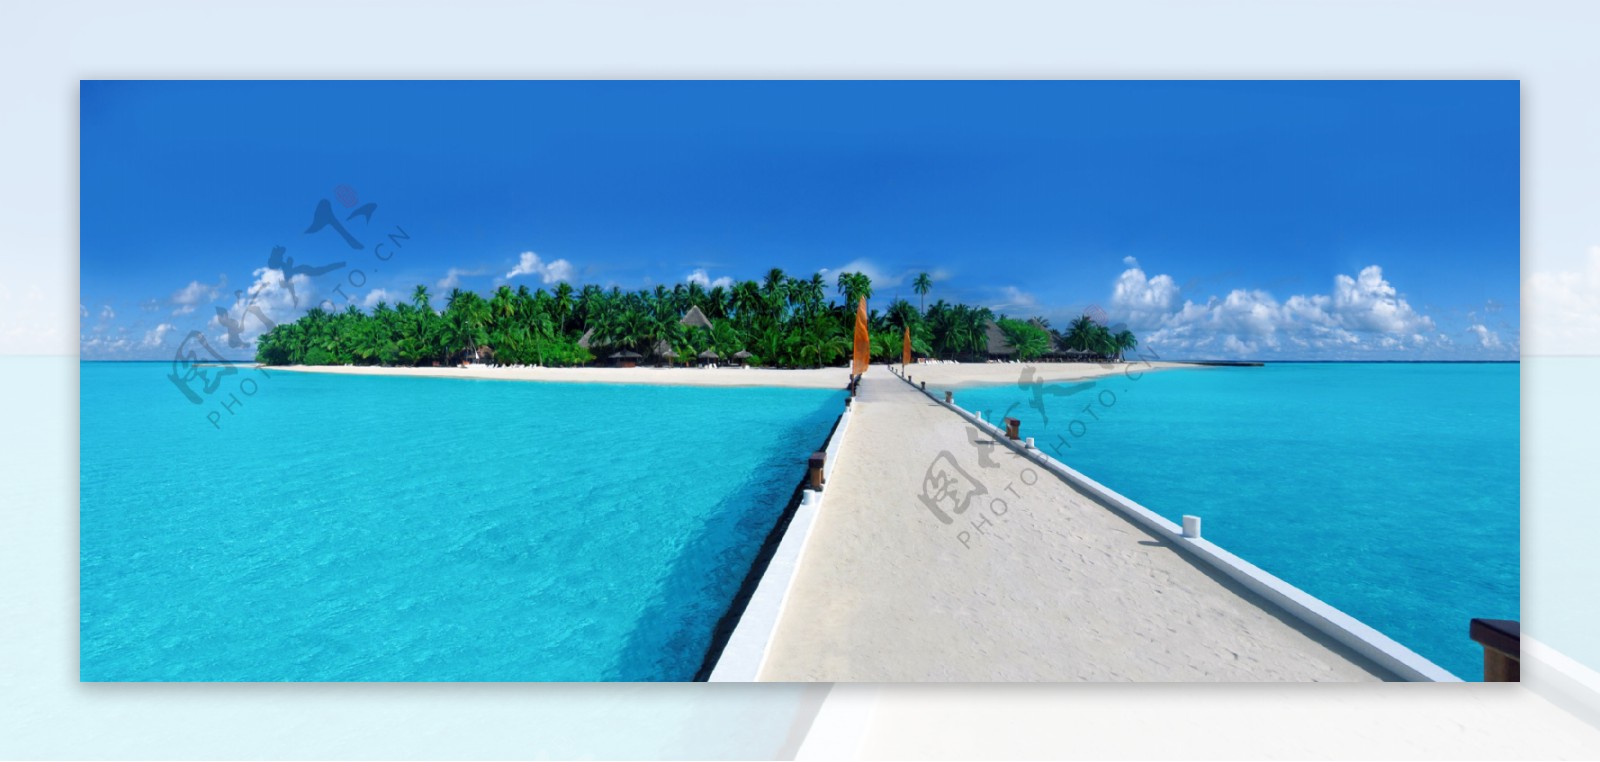 马尔代夫蓝色海岛风景